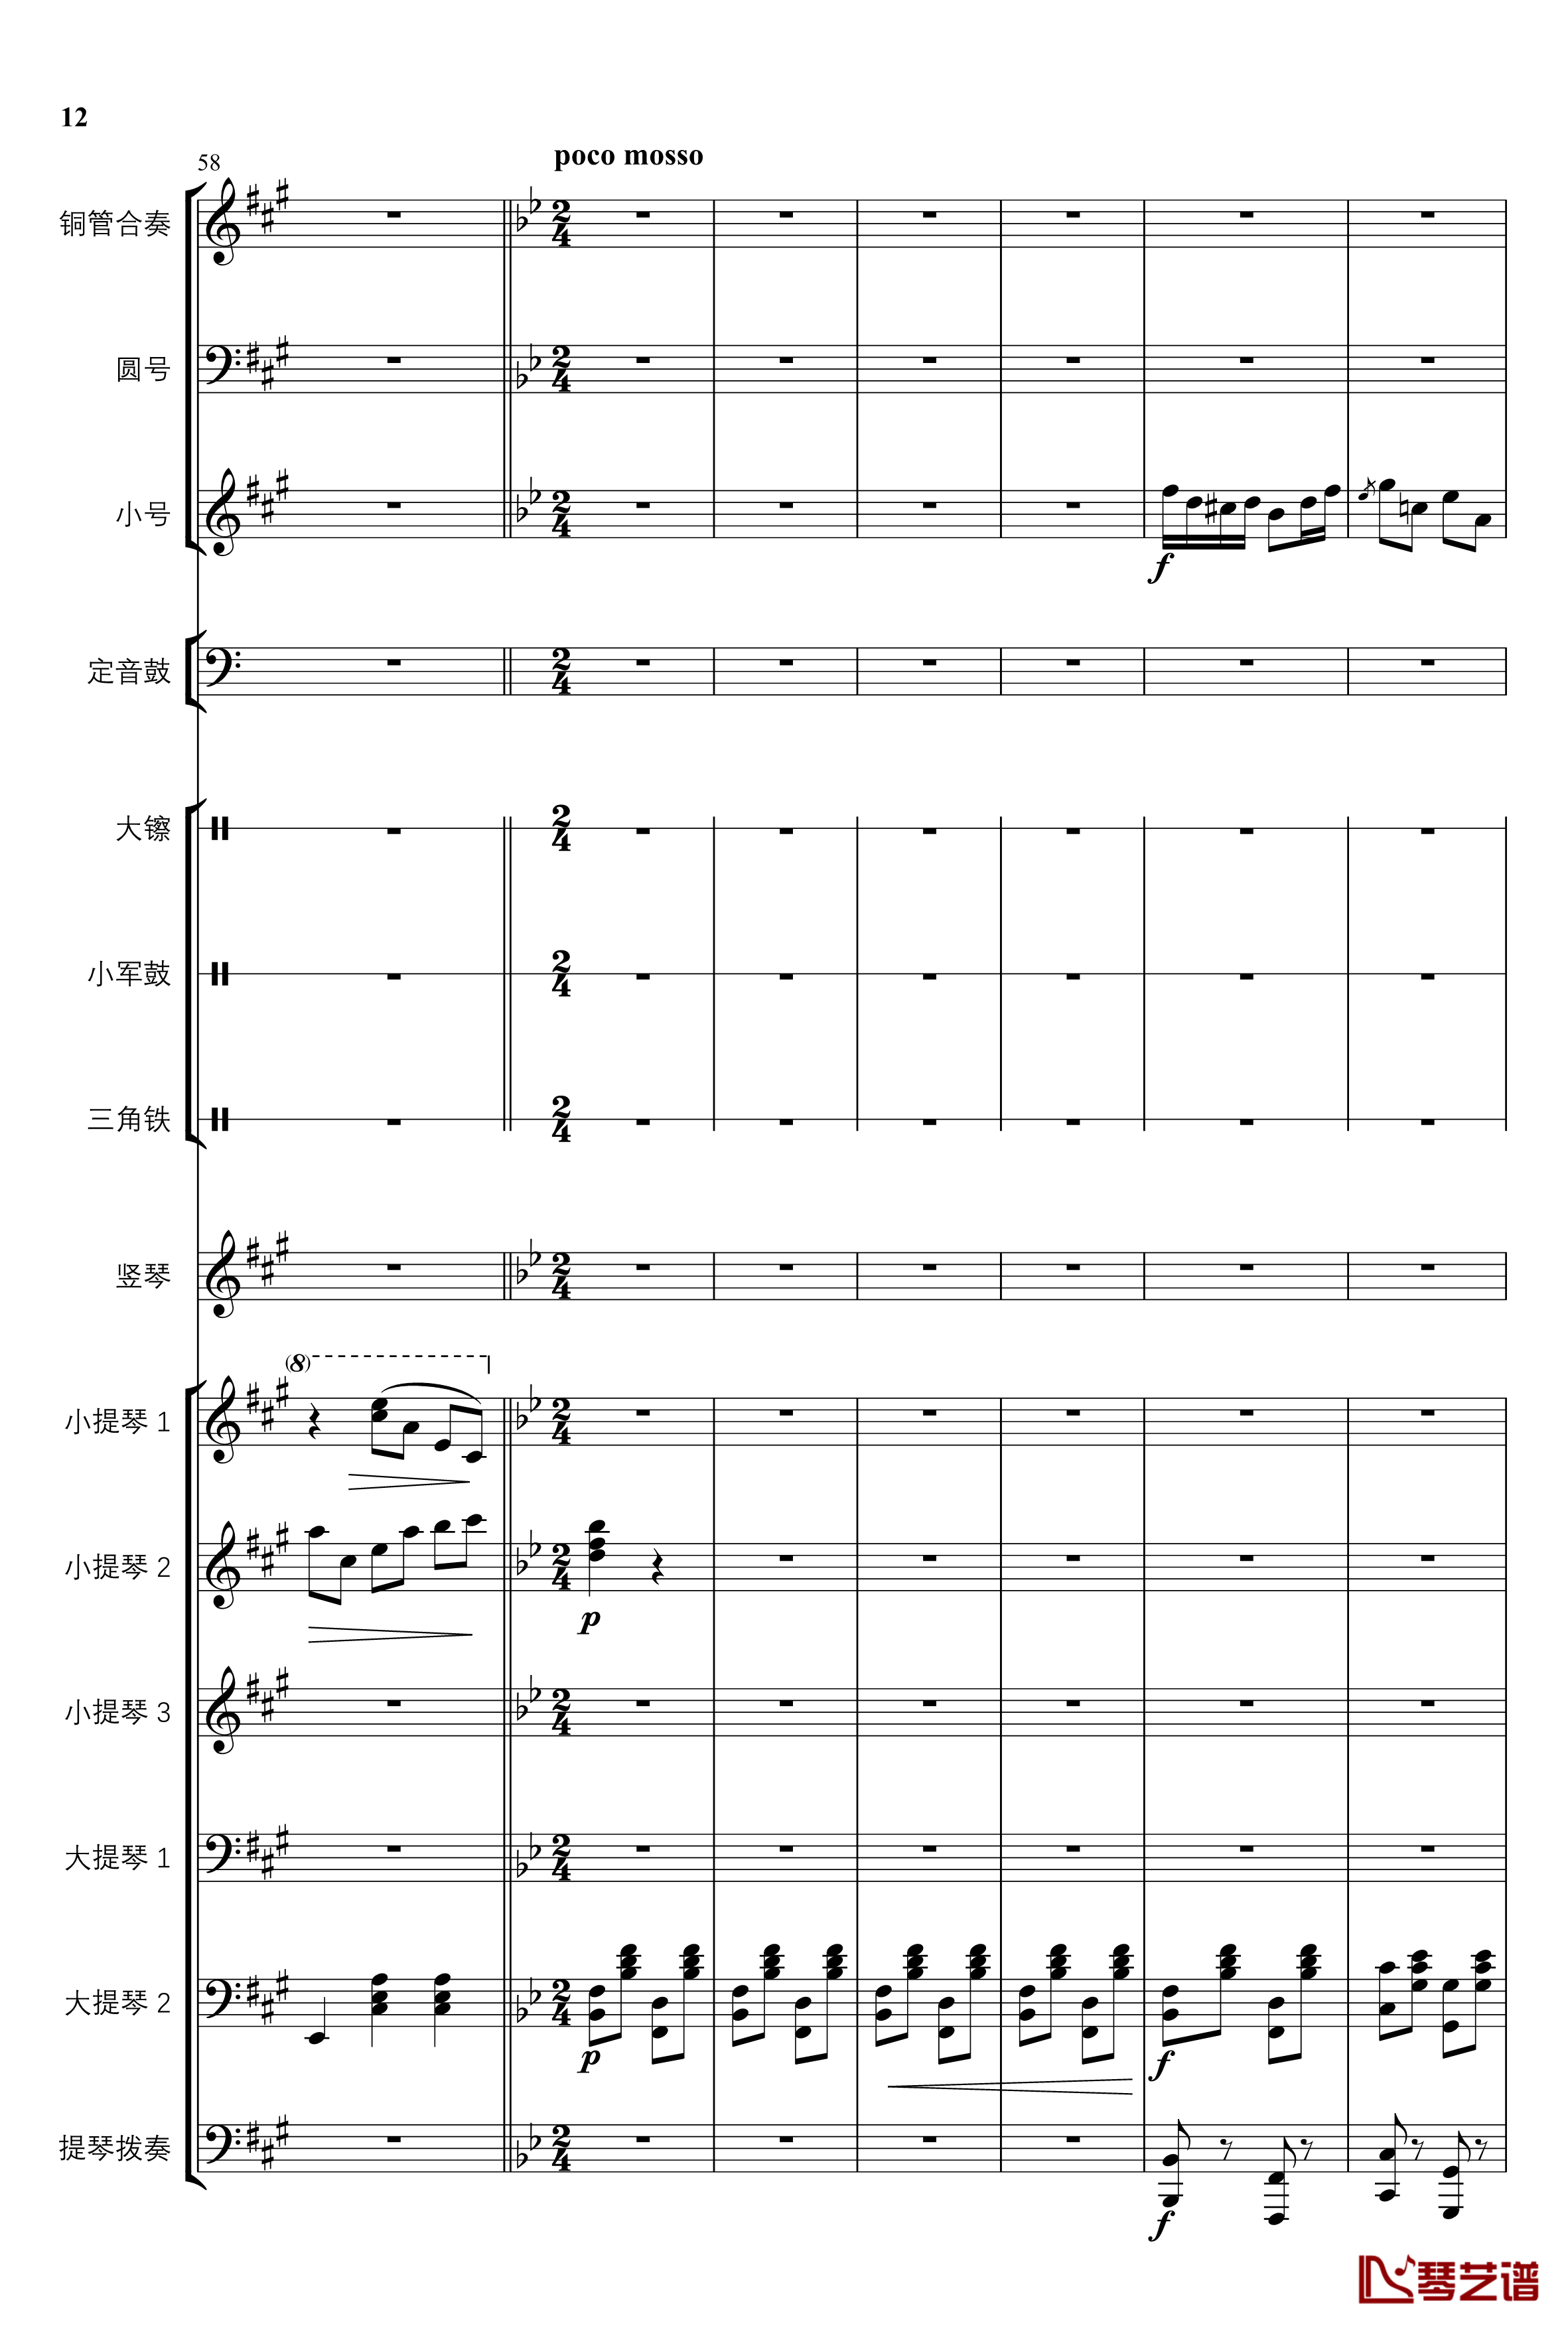 2013考试周的叙事曲钢琴谱-管弦乐重编曲版-江畔新绿12